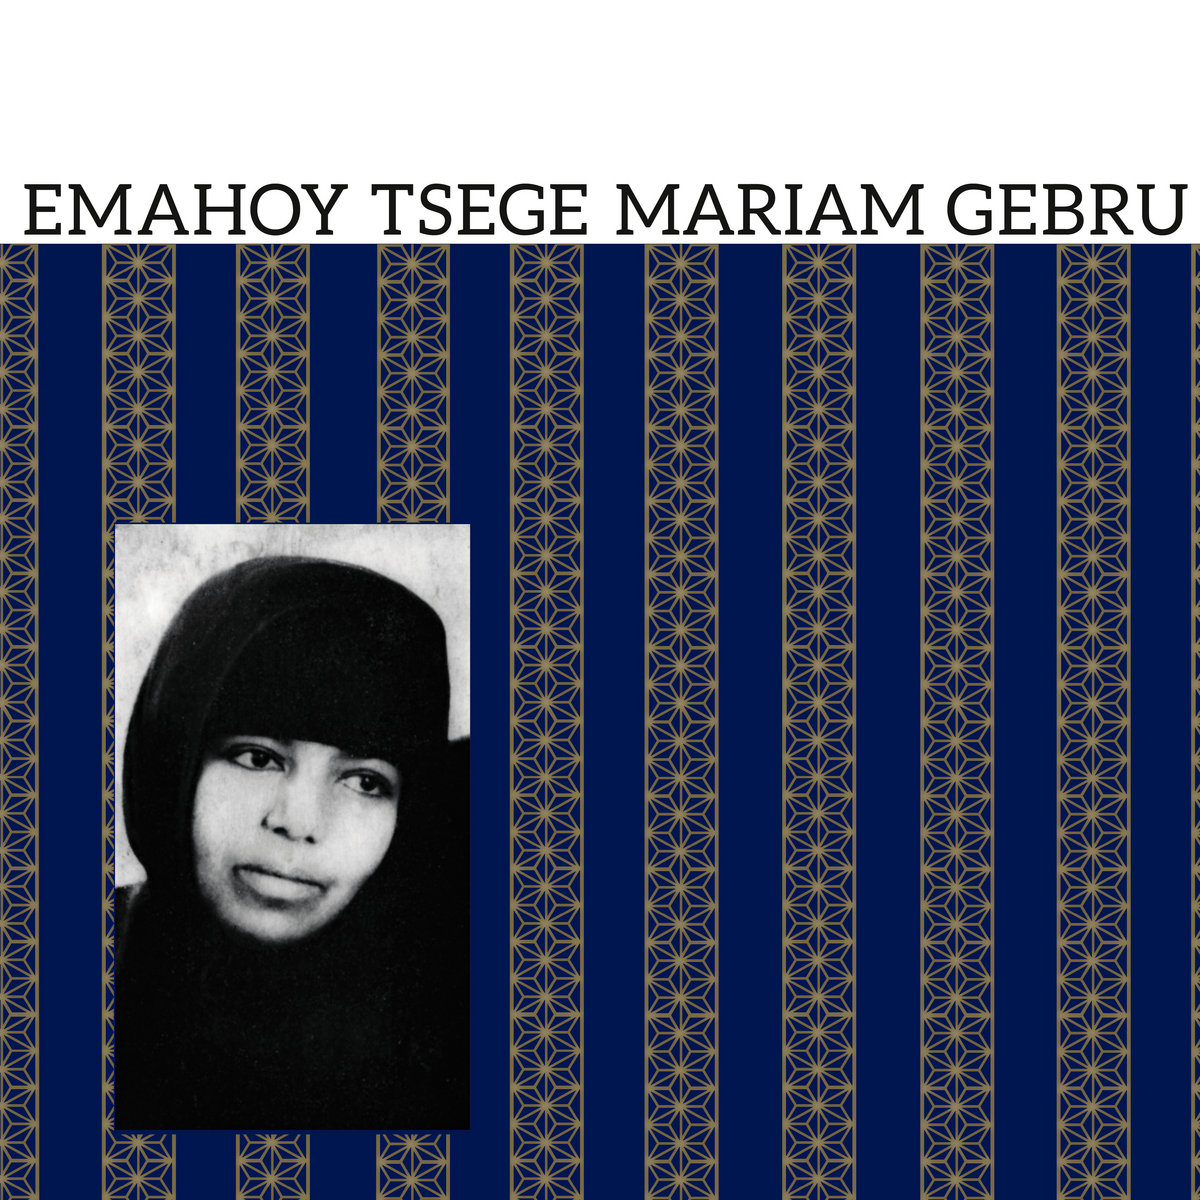 Emahoy Tsege Mariam Gebru / EMAHOY TSEGE MARIAM GEBRU / エマフォイ・ツェゲ・マリアム・ゲブルー